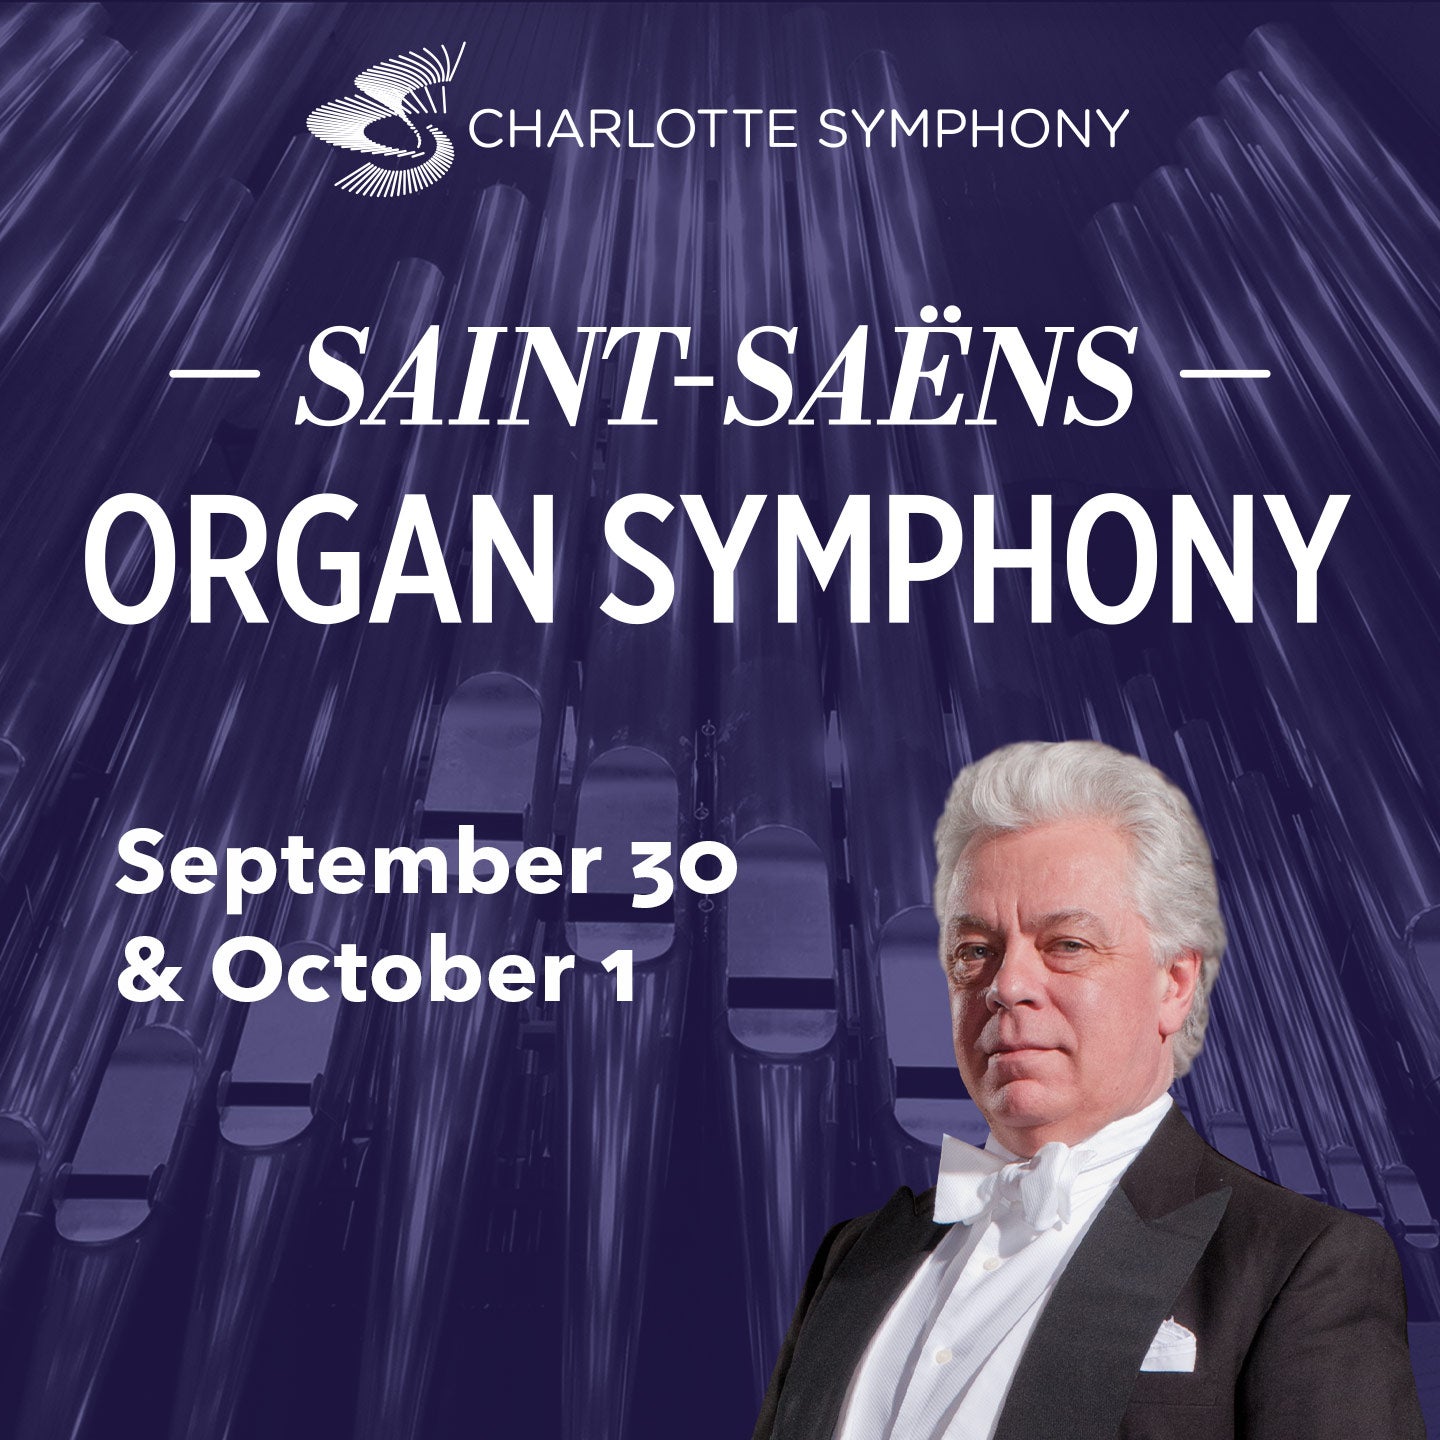 Charlotte Symphony: Saint-Saens Organ Symphony